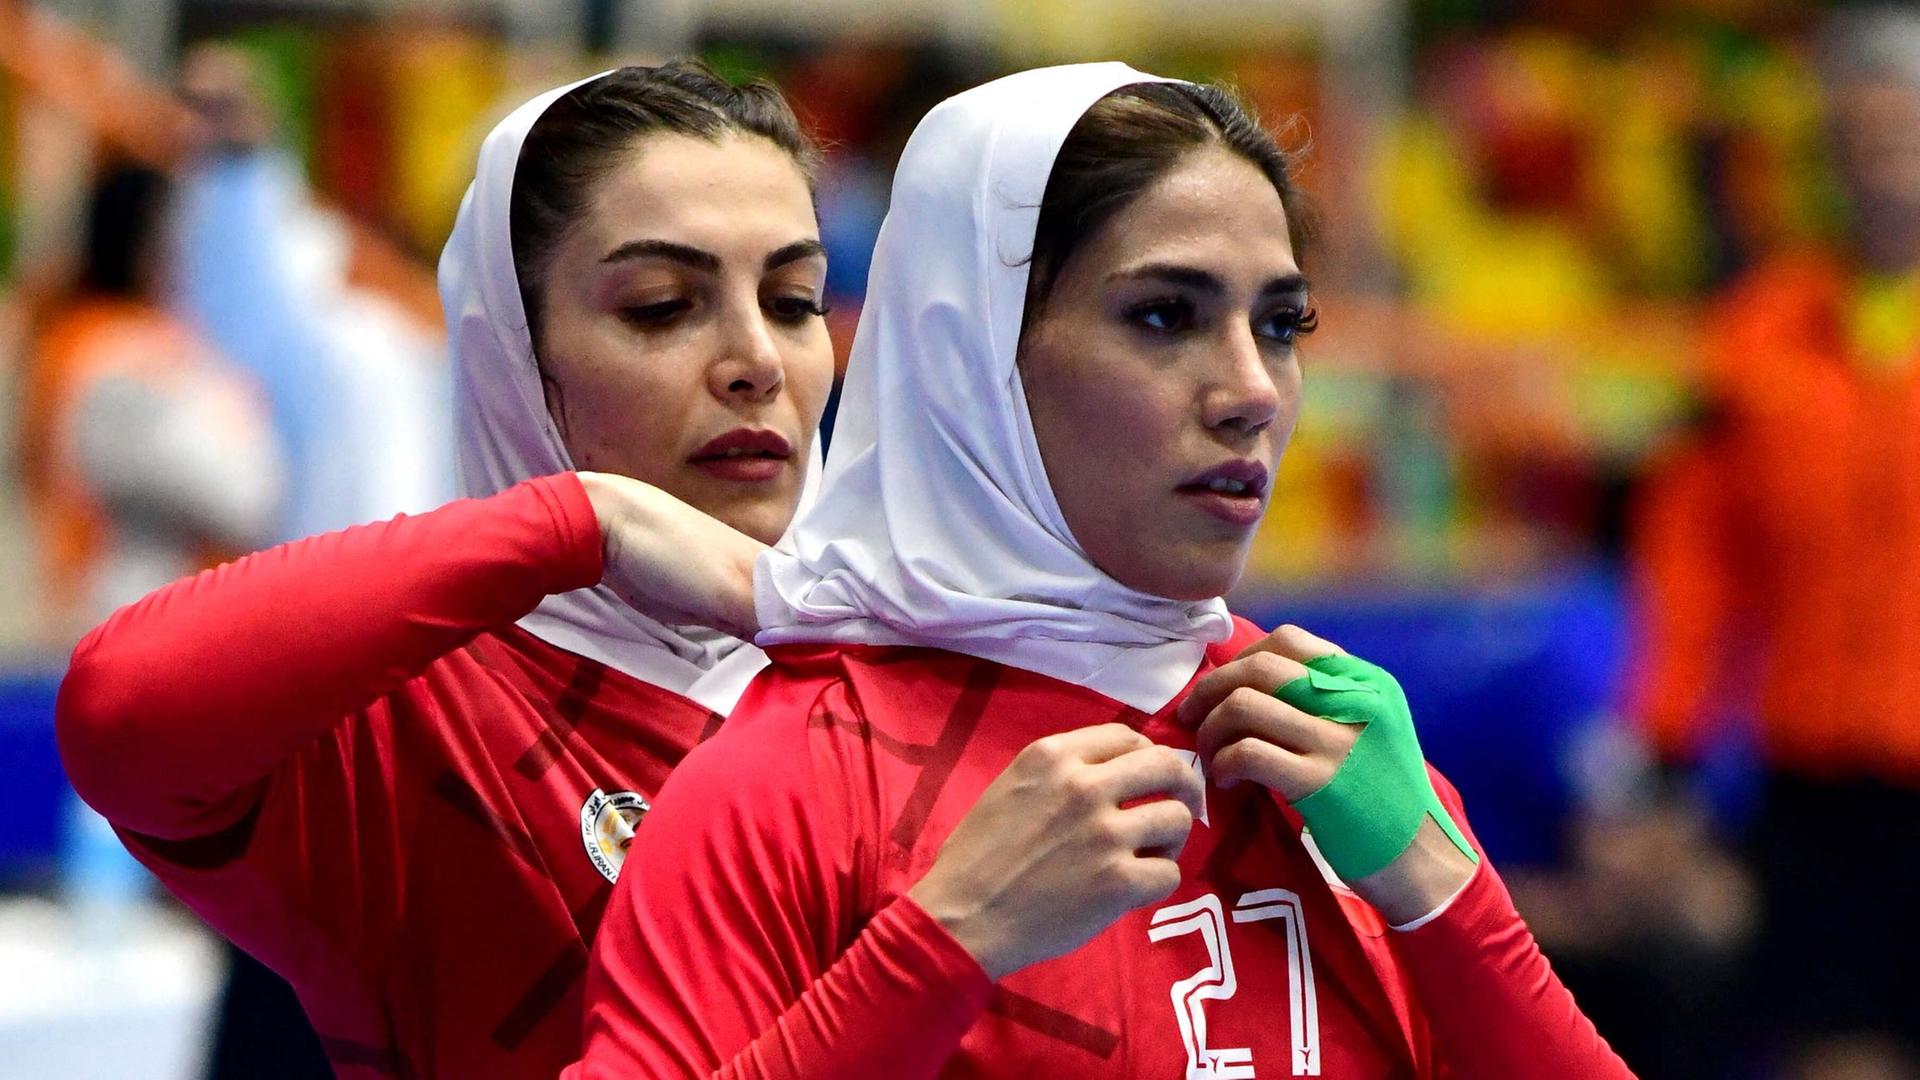 Die zwei Spielerinnen tragen rote Trikots und weiße Kopftücher: Eine bindet der anderen das Tuch hinten fest. 